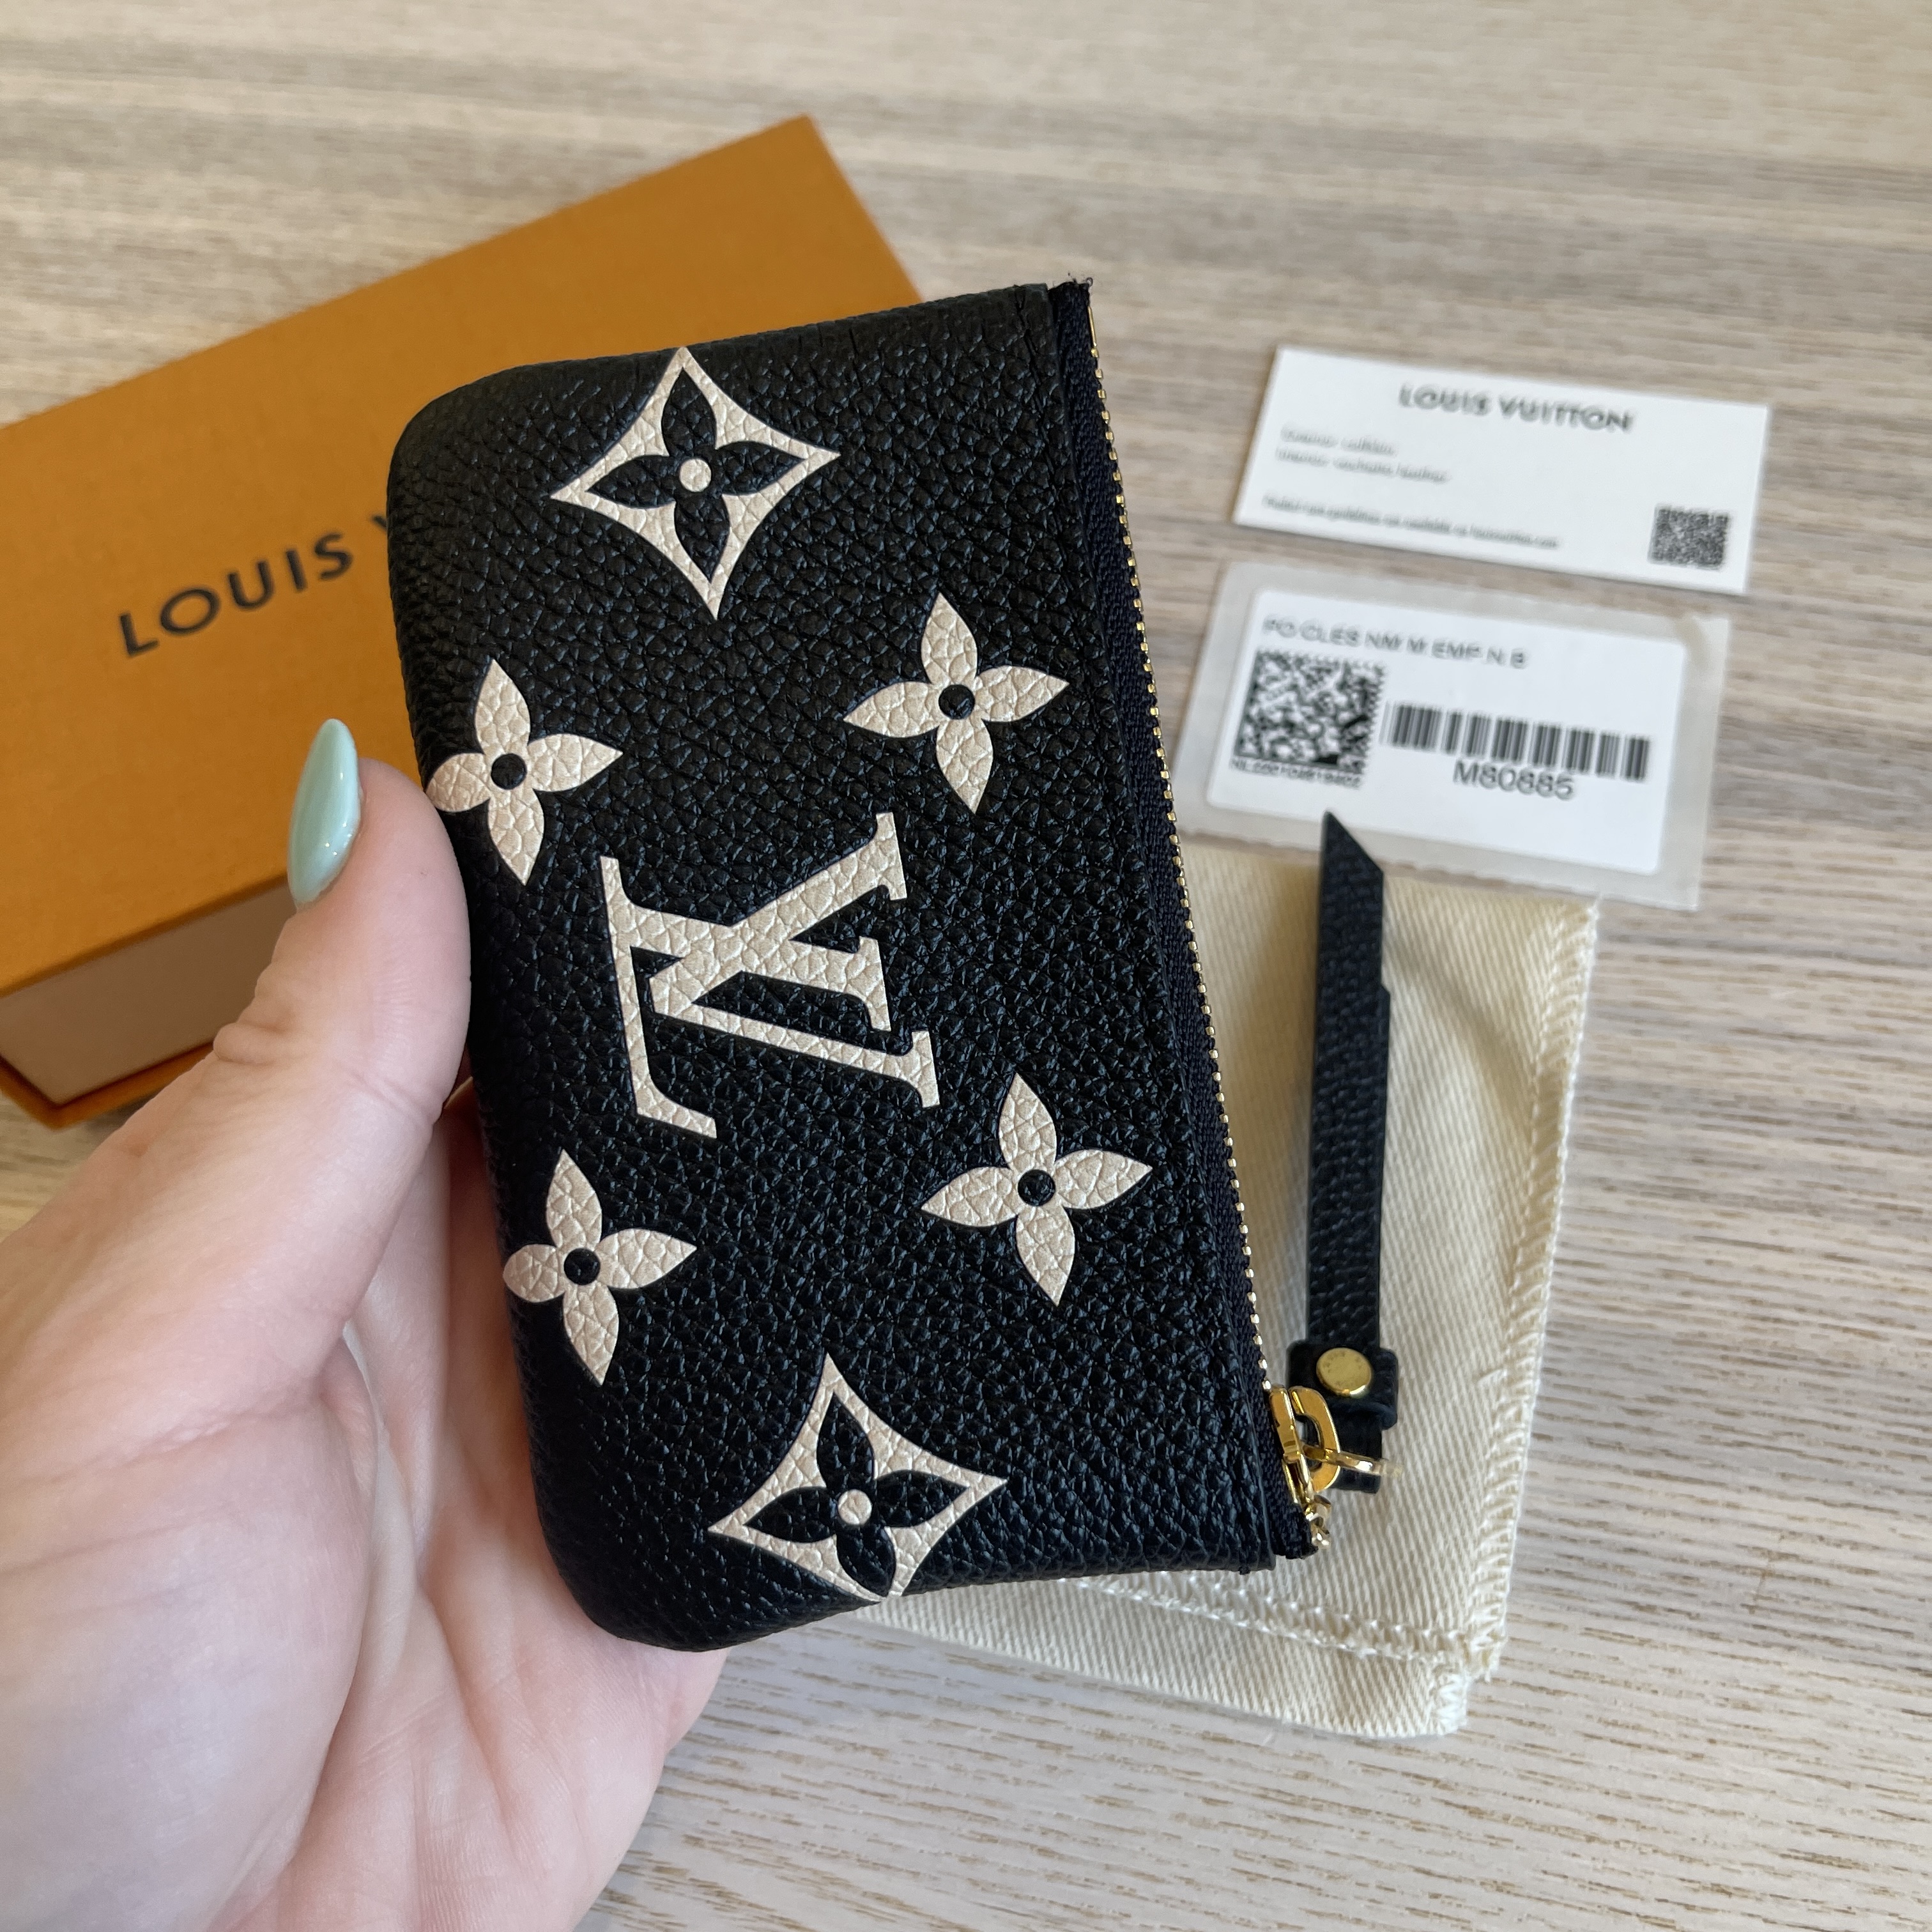 Shop Louis Vuitton MONOGRAM EMPREINTE Key pouch (M80885) by Sincerity_m639